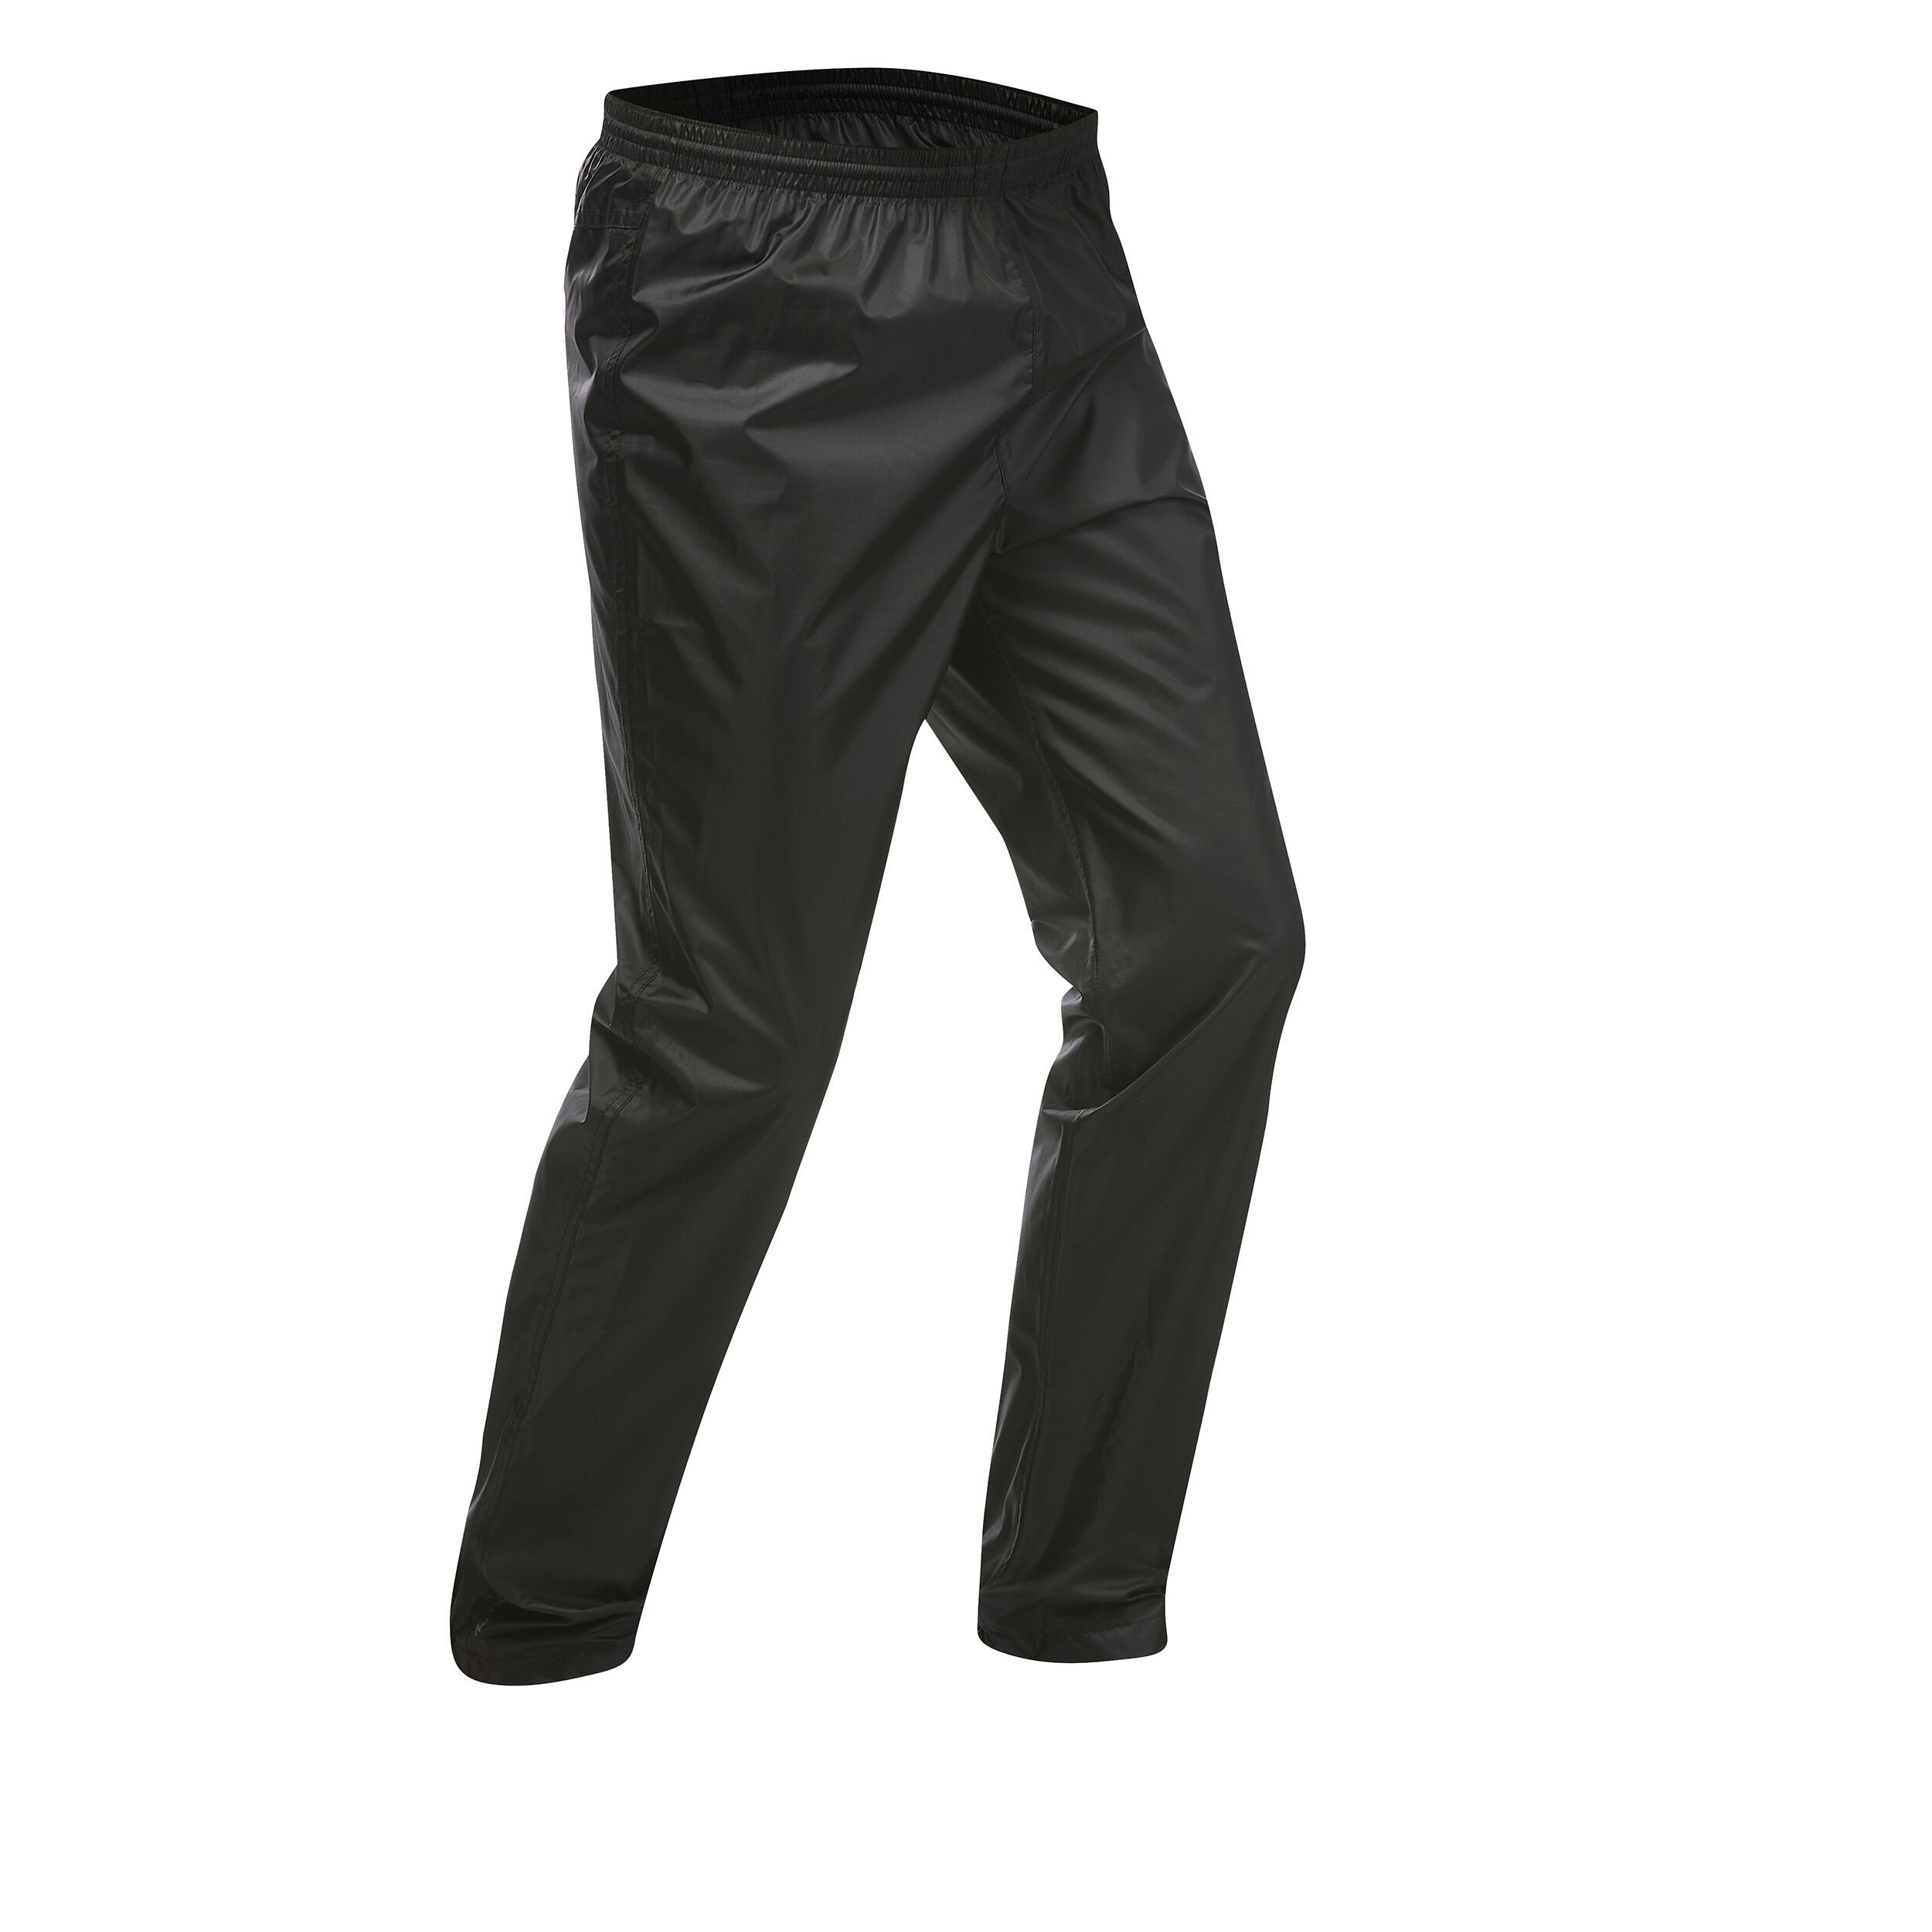 NEW Grey Waterproof Trousers BTWIN Unisex Size XS- 2S Decathlon | eBay